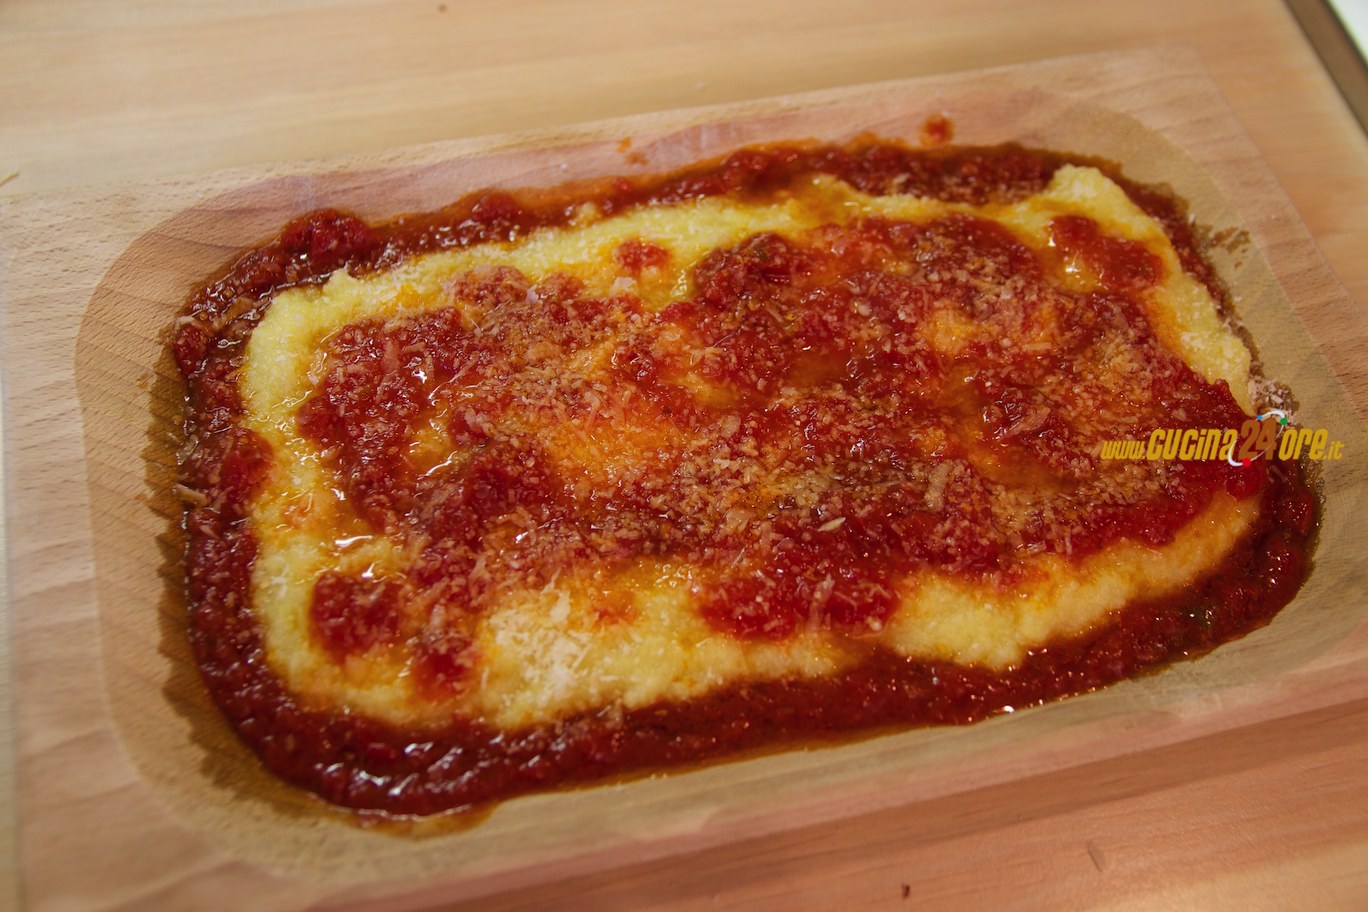 Polenta al Sugo con Salsiccia - Ricetta Facile e Veloce  Polenta With  Sausage and Tomato Sauce - Easy and Fast Recipe - Ricette di Cucina